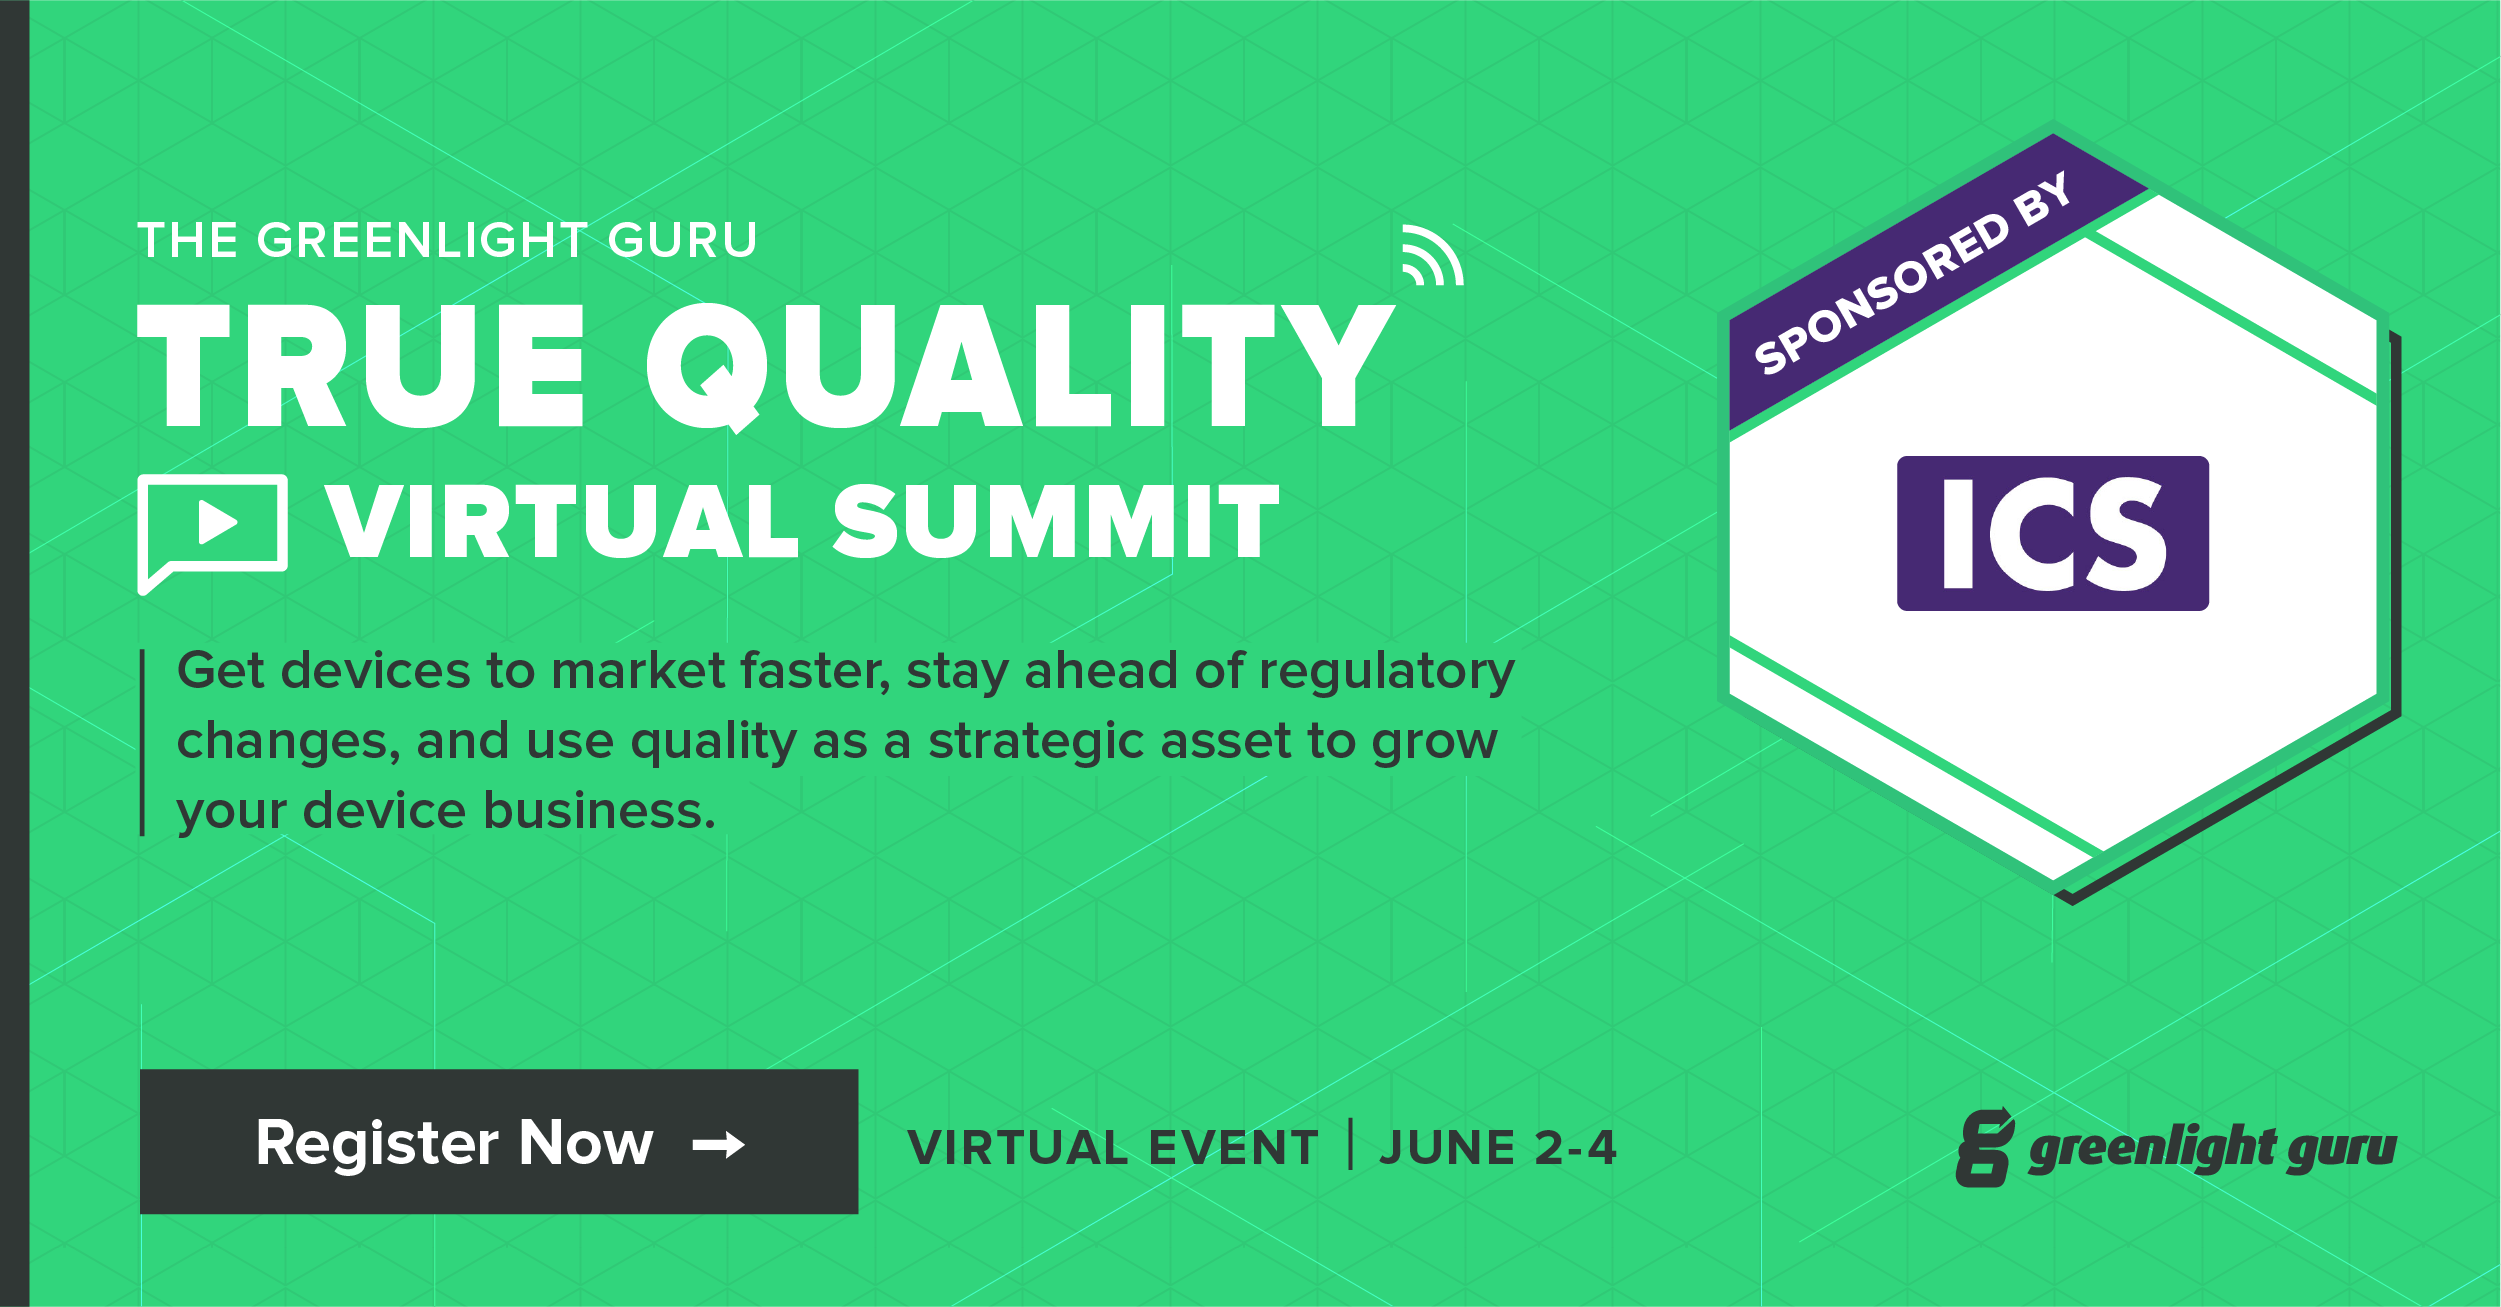 Greenlight Guru True Quality Virtual Summit